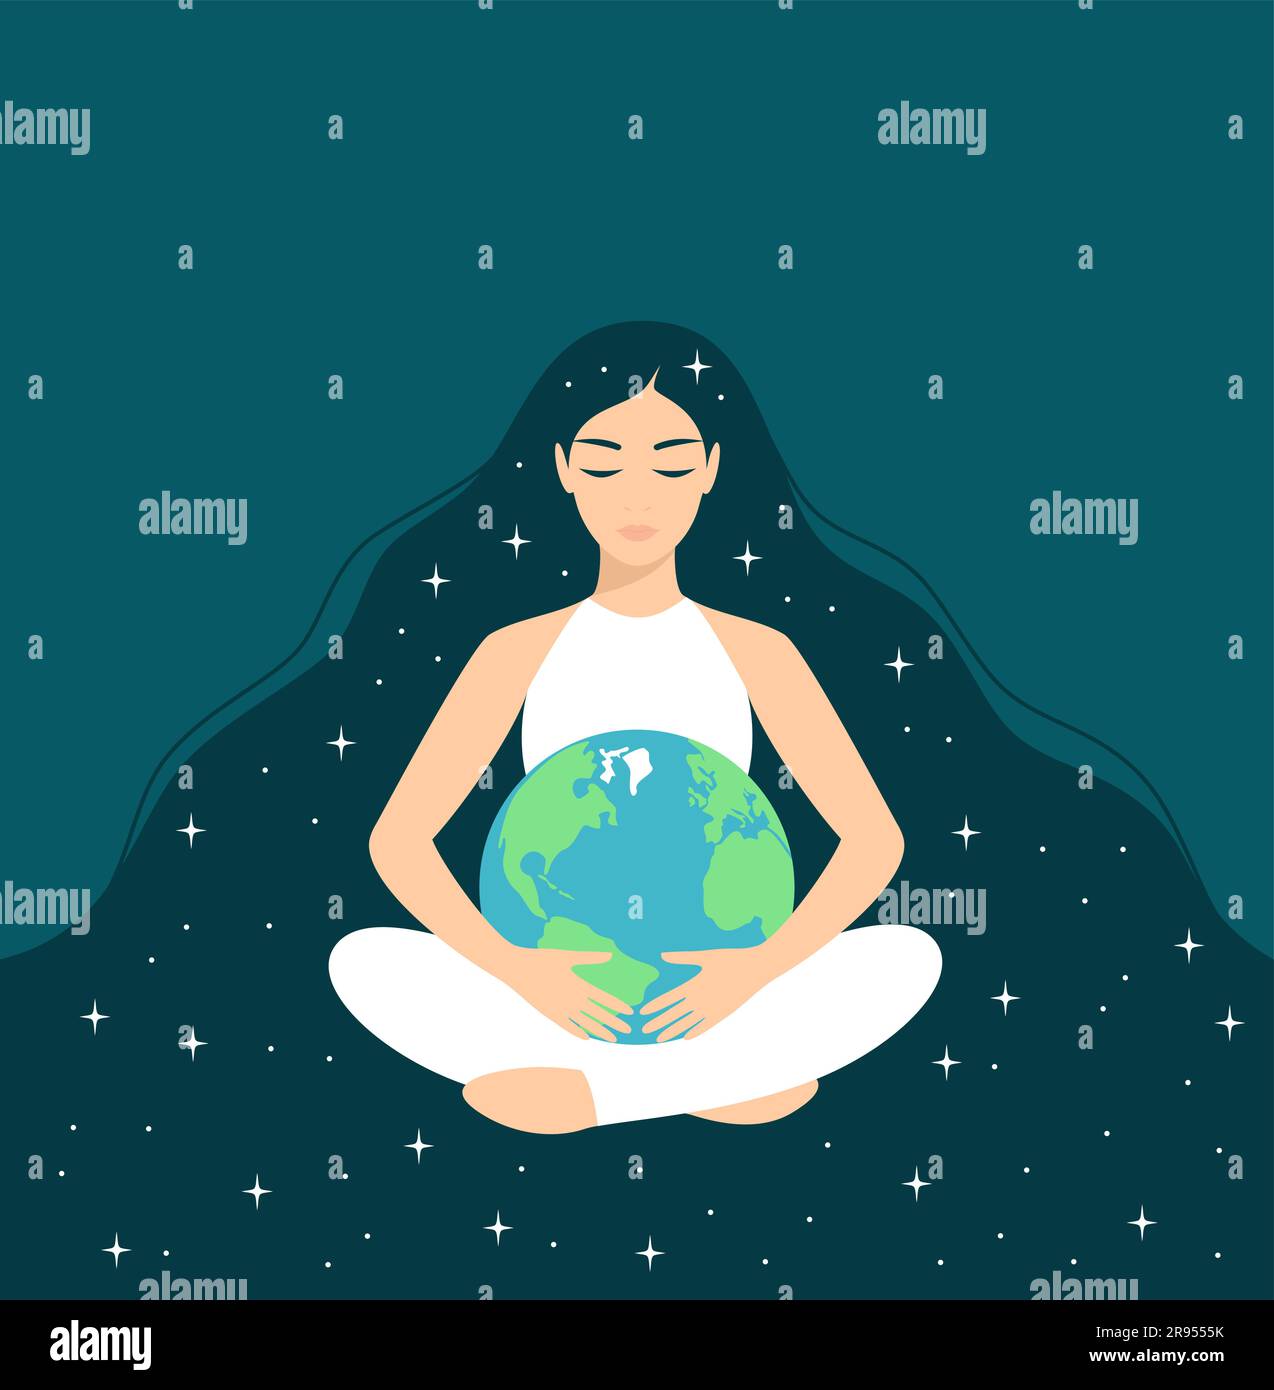 Jeune femme aux longs cheveux étoilés et aux yeux fermés, assise en position lotus et embrassant la planète Terre. Soins et protection de l'environnement. vec plat Illustration de Vecteur